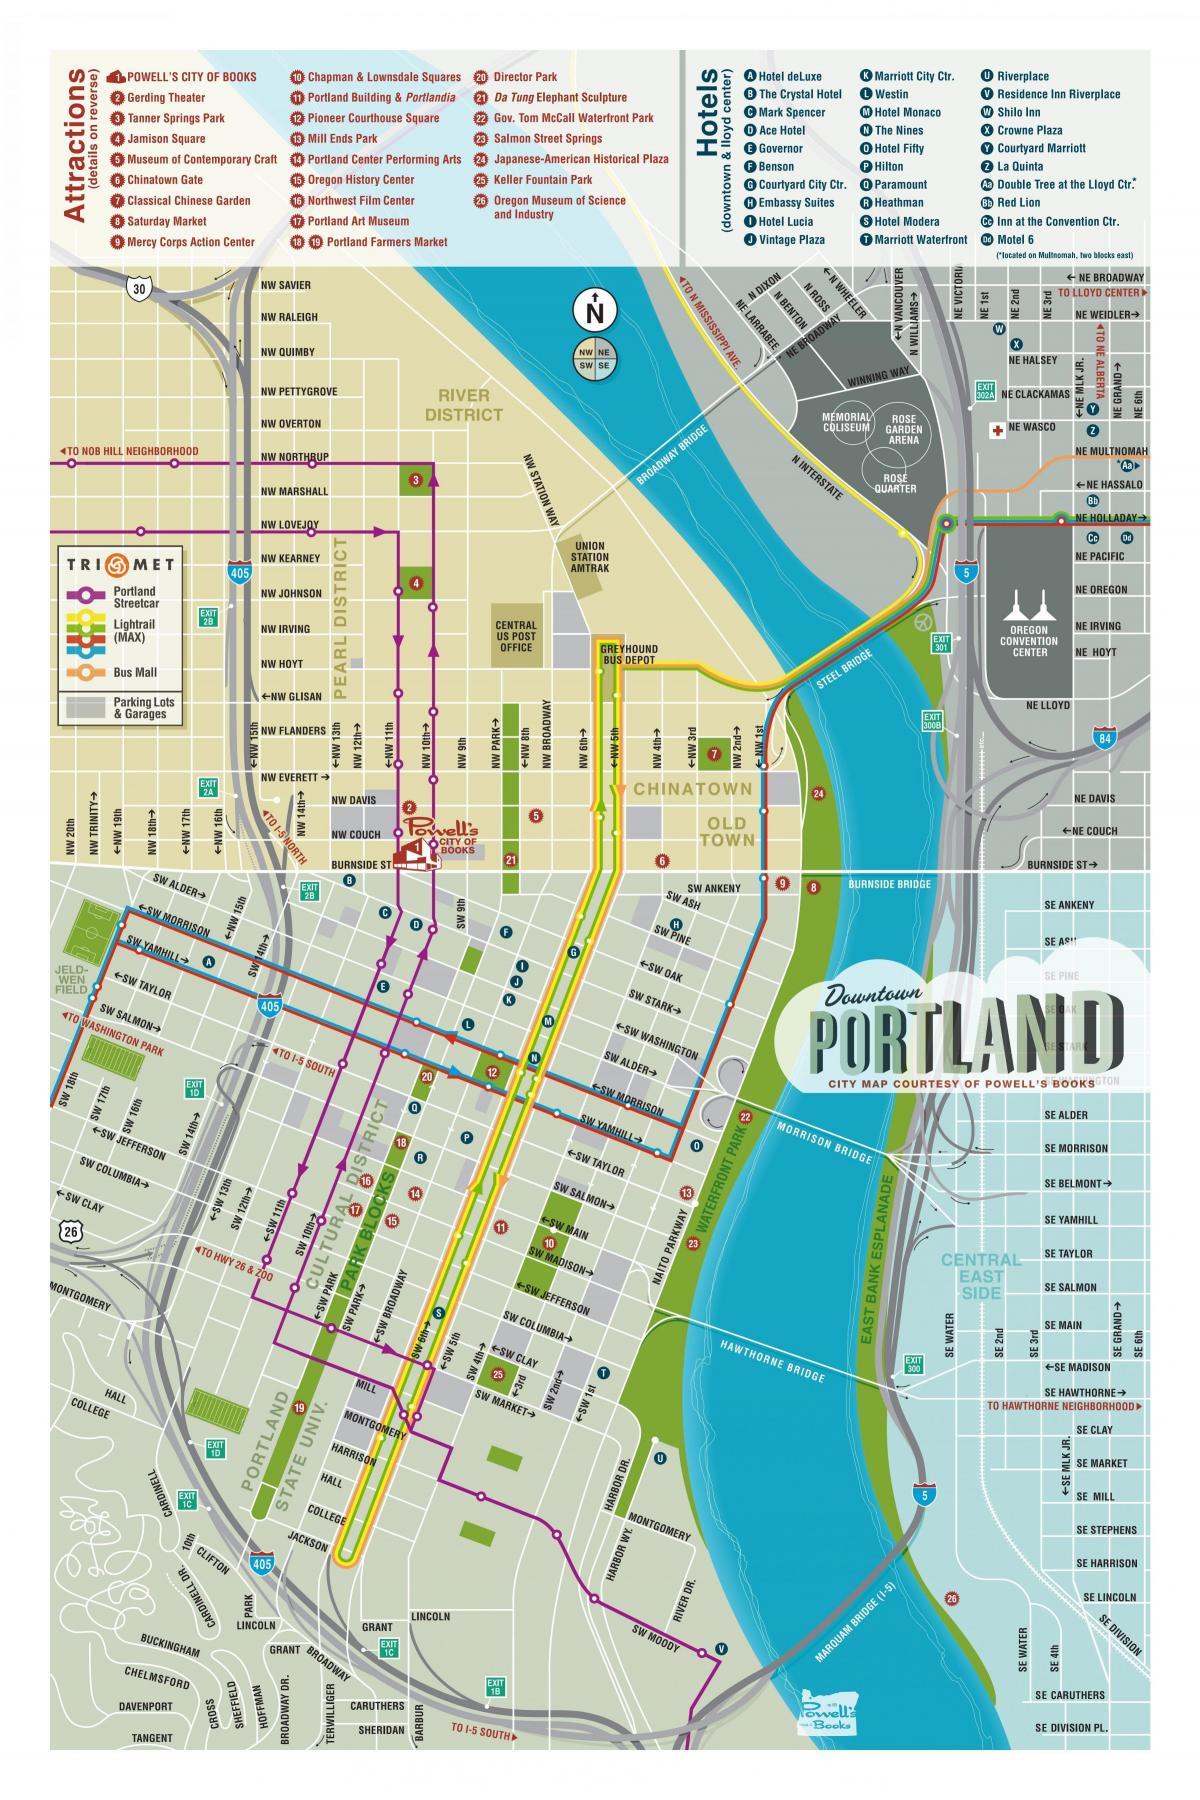 քարտեզ Portland այցելուները